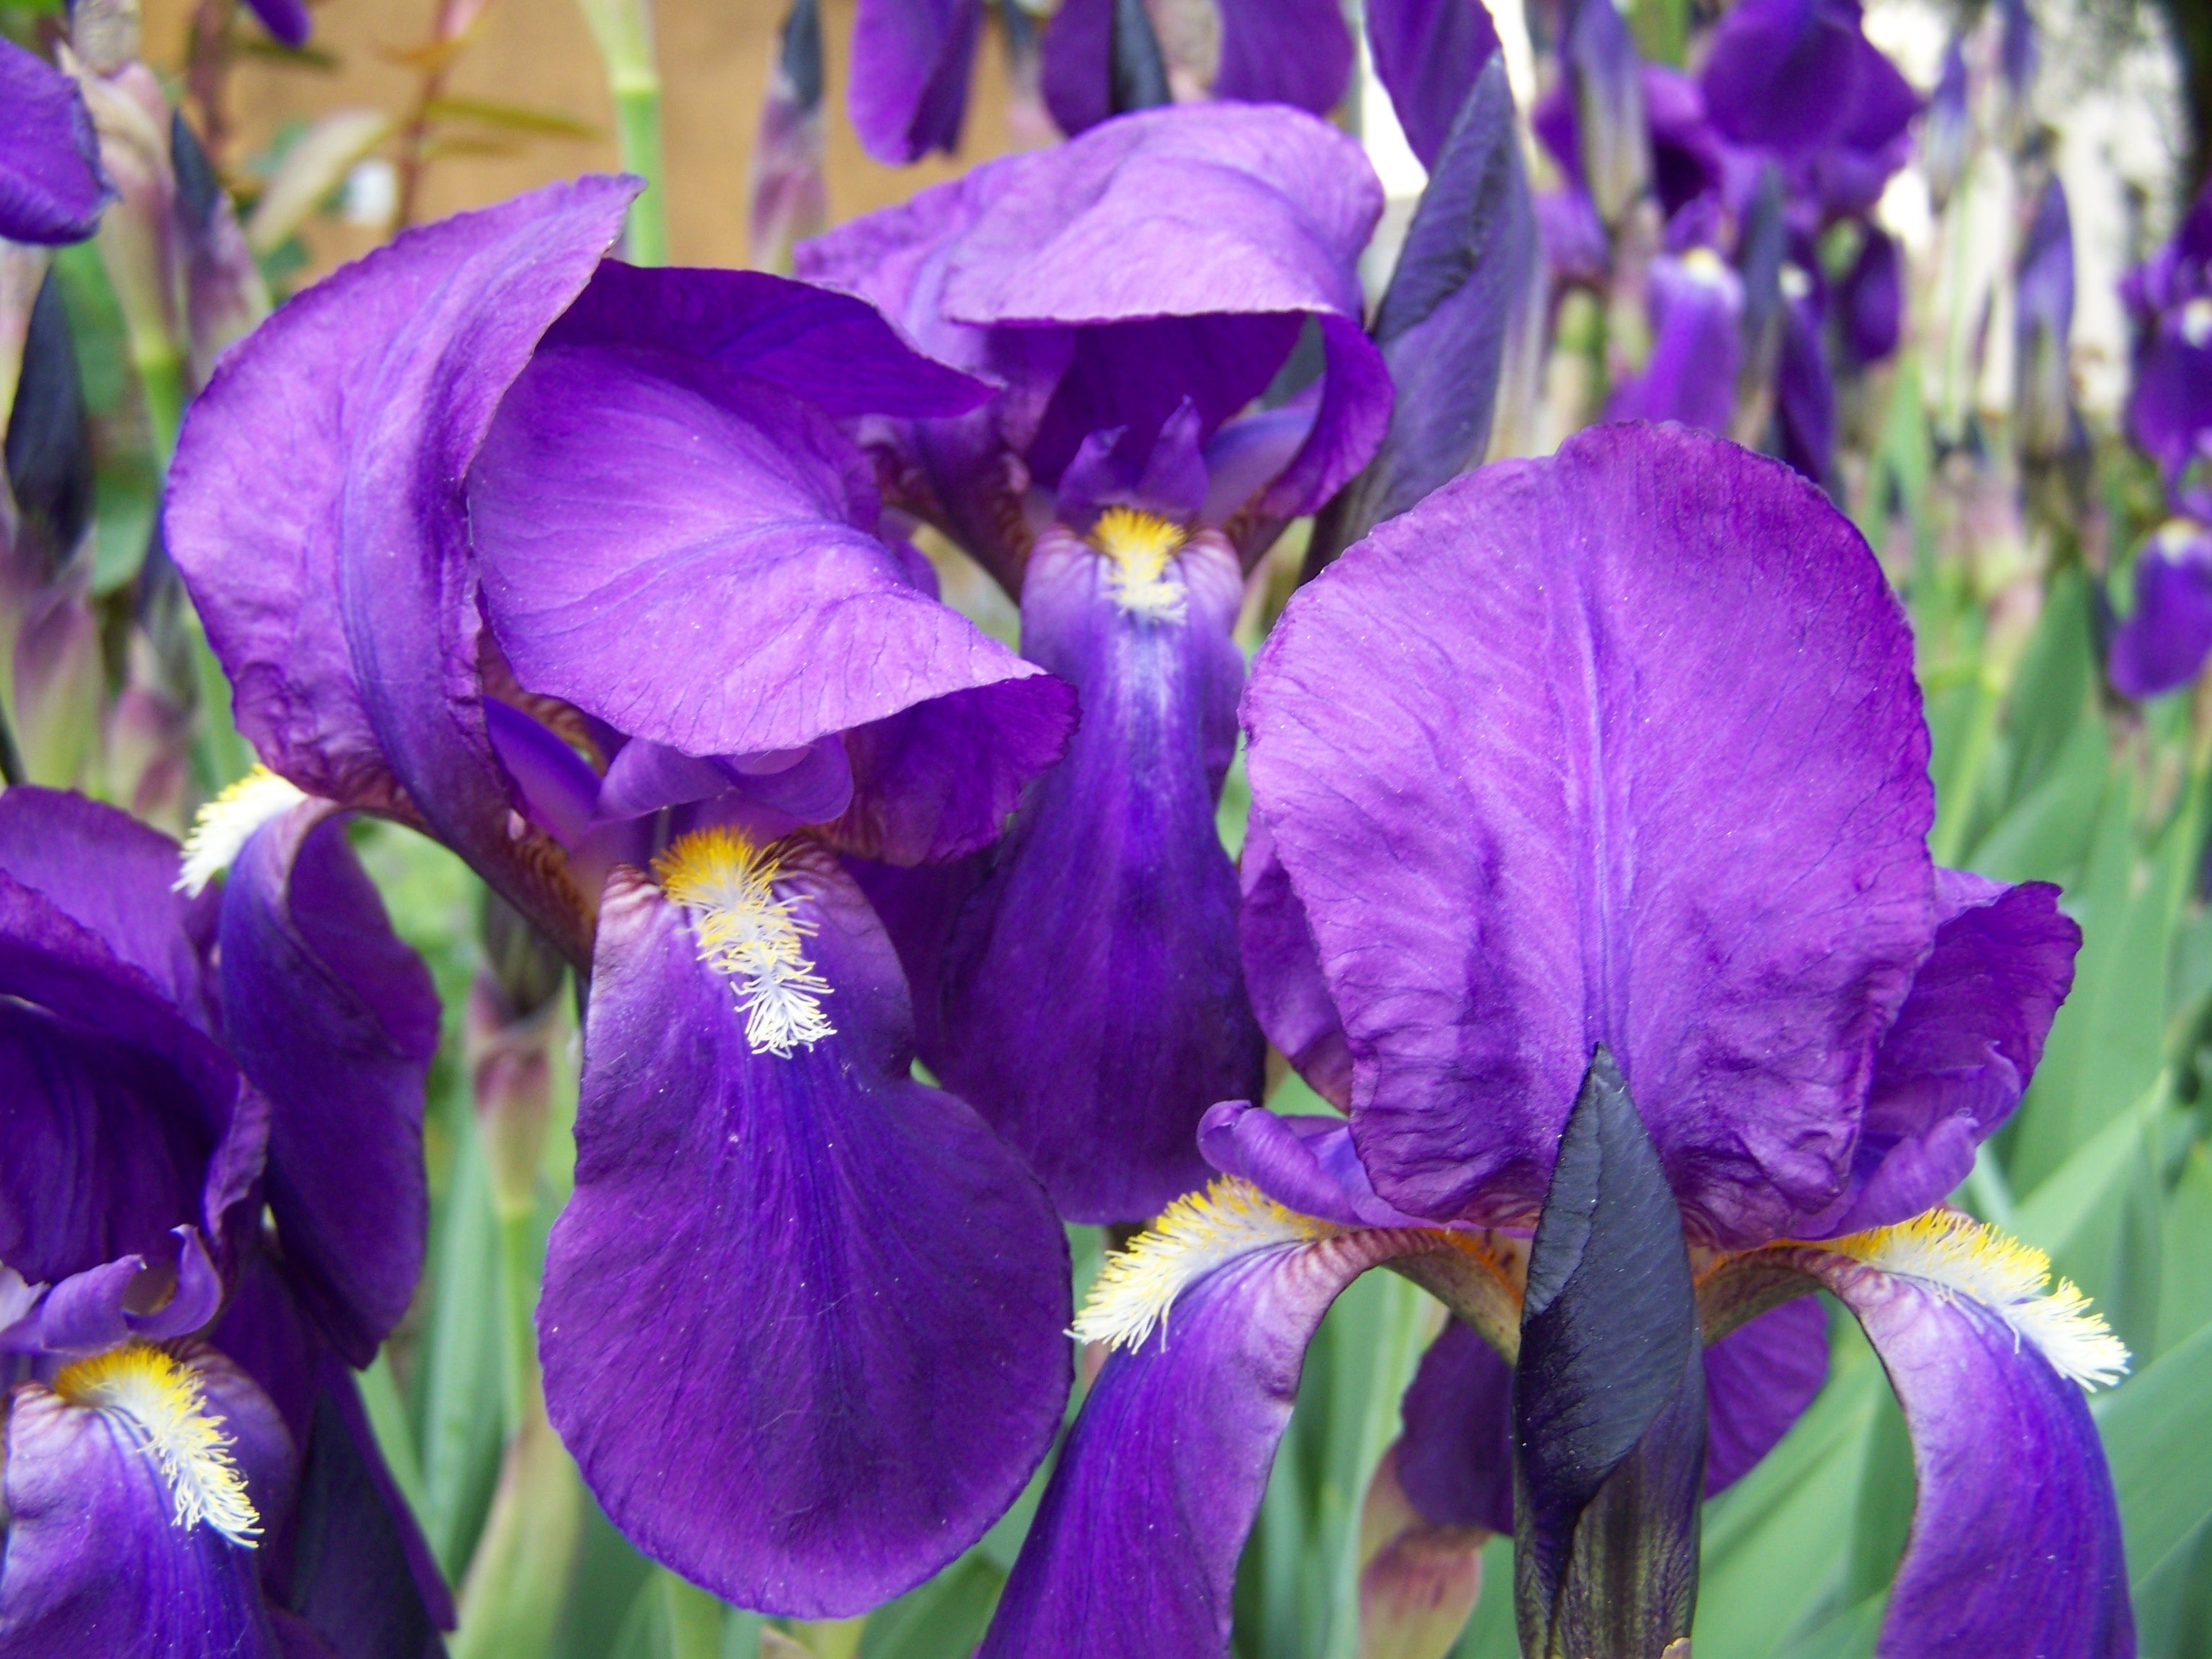 purple irises